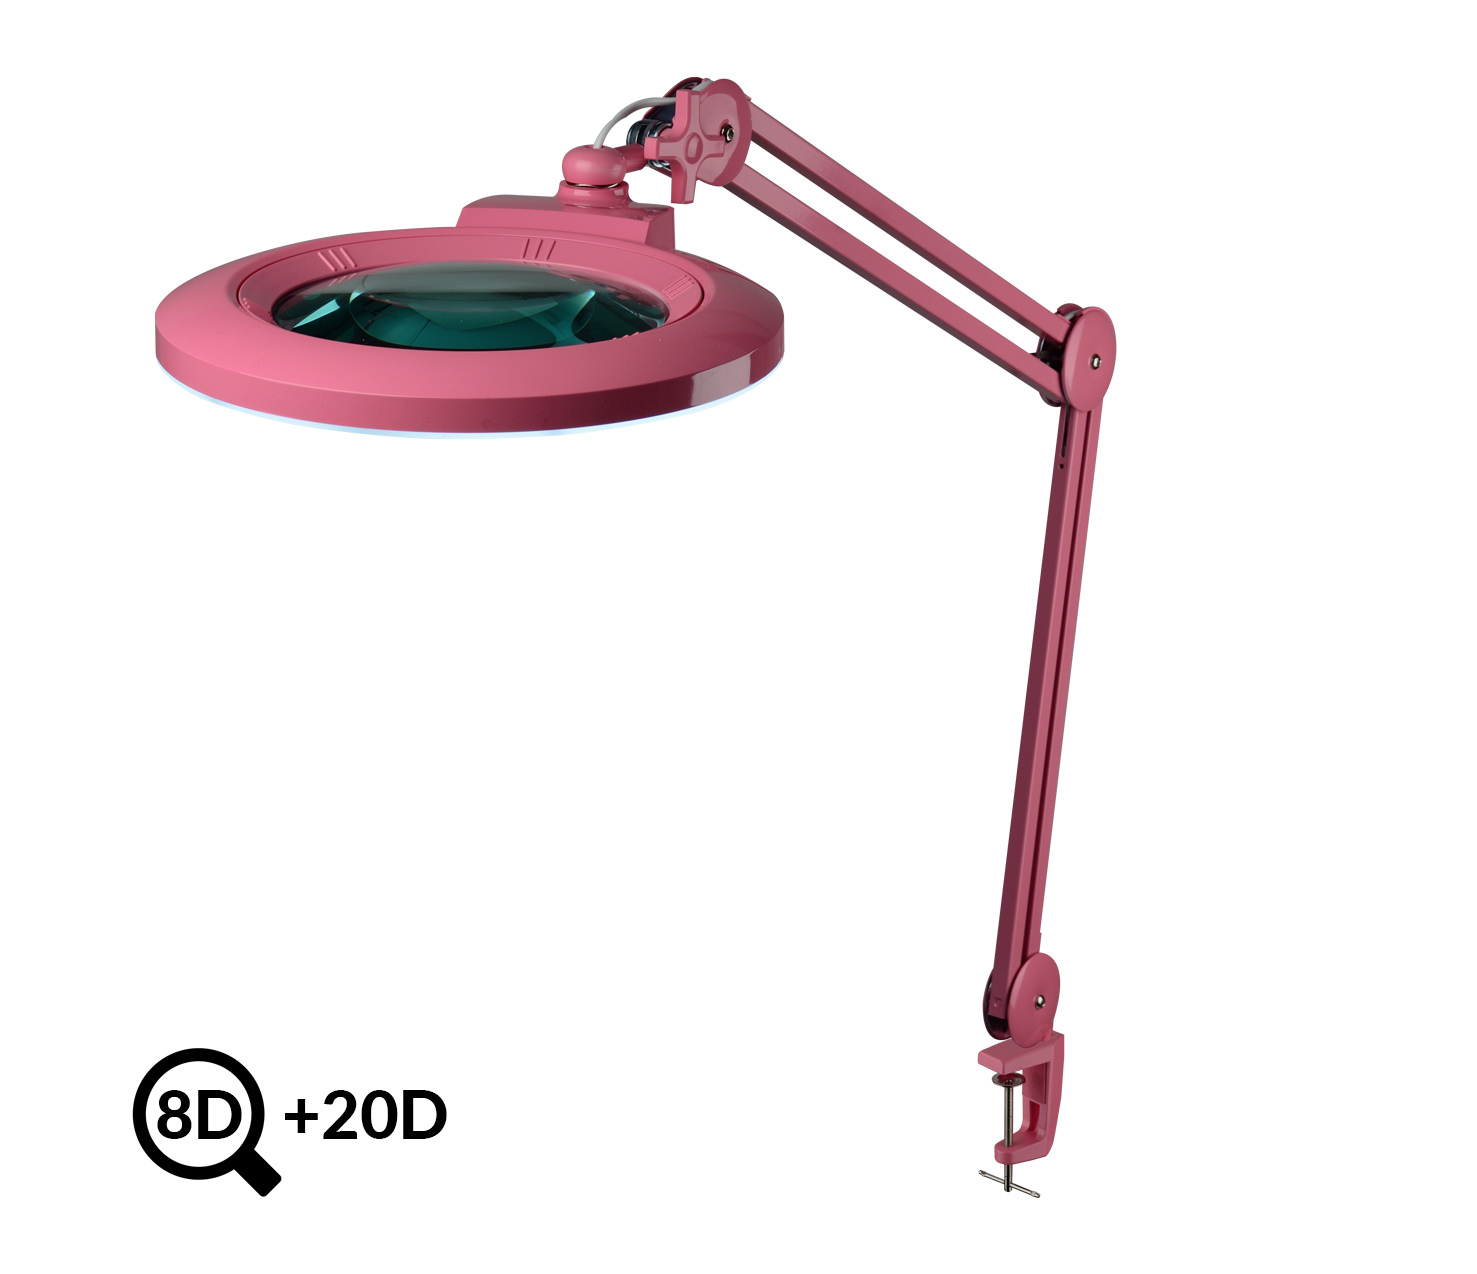 Růžová kosmetická LED lampa s lupou IB-178, průměr 178mm, 8D+20D